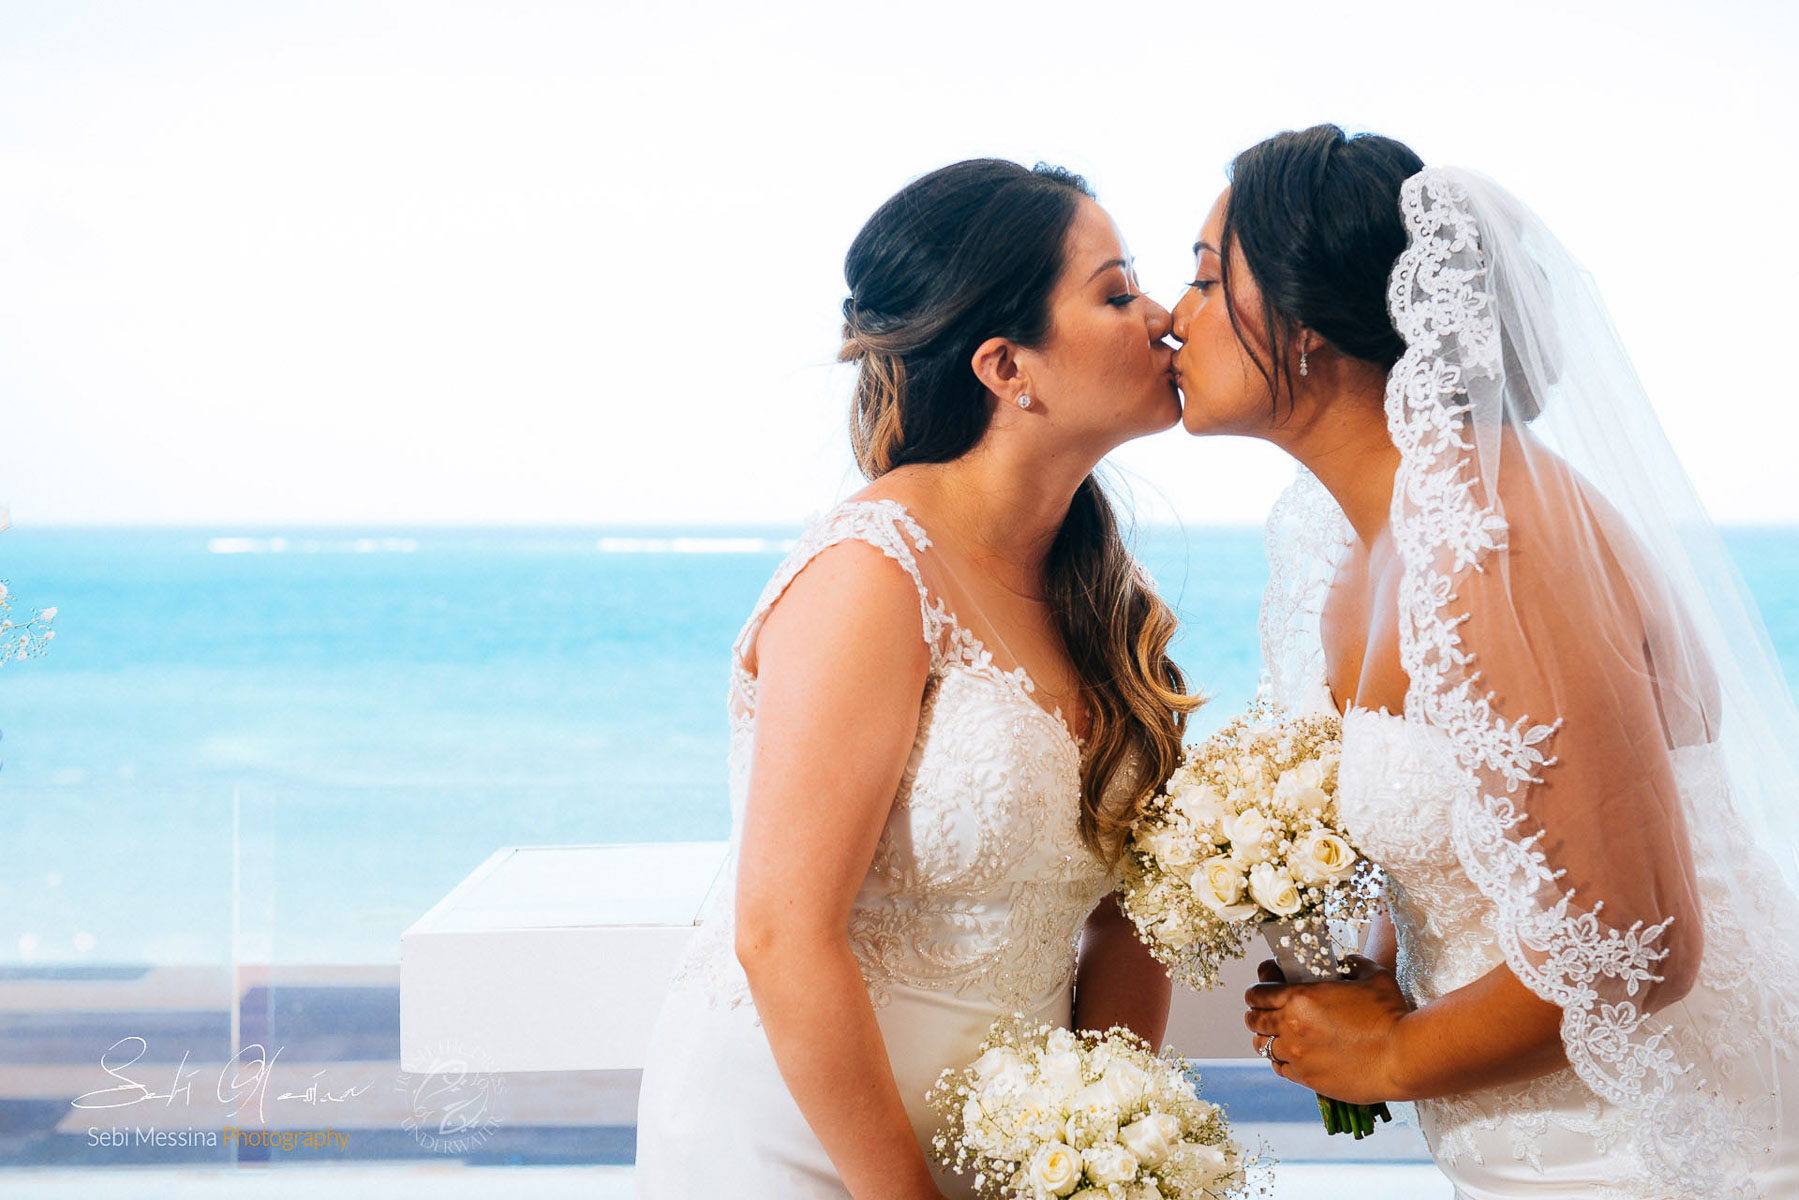 Royalton Cancun Sky Terrace - Same-sex wedding Mexico - Sebi Messina Photography